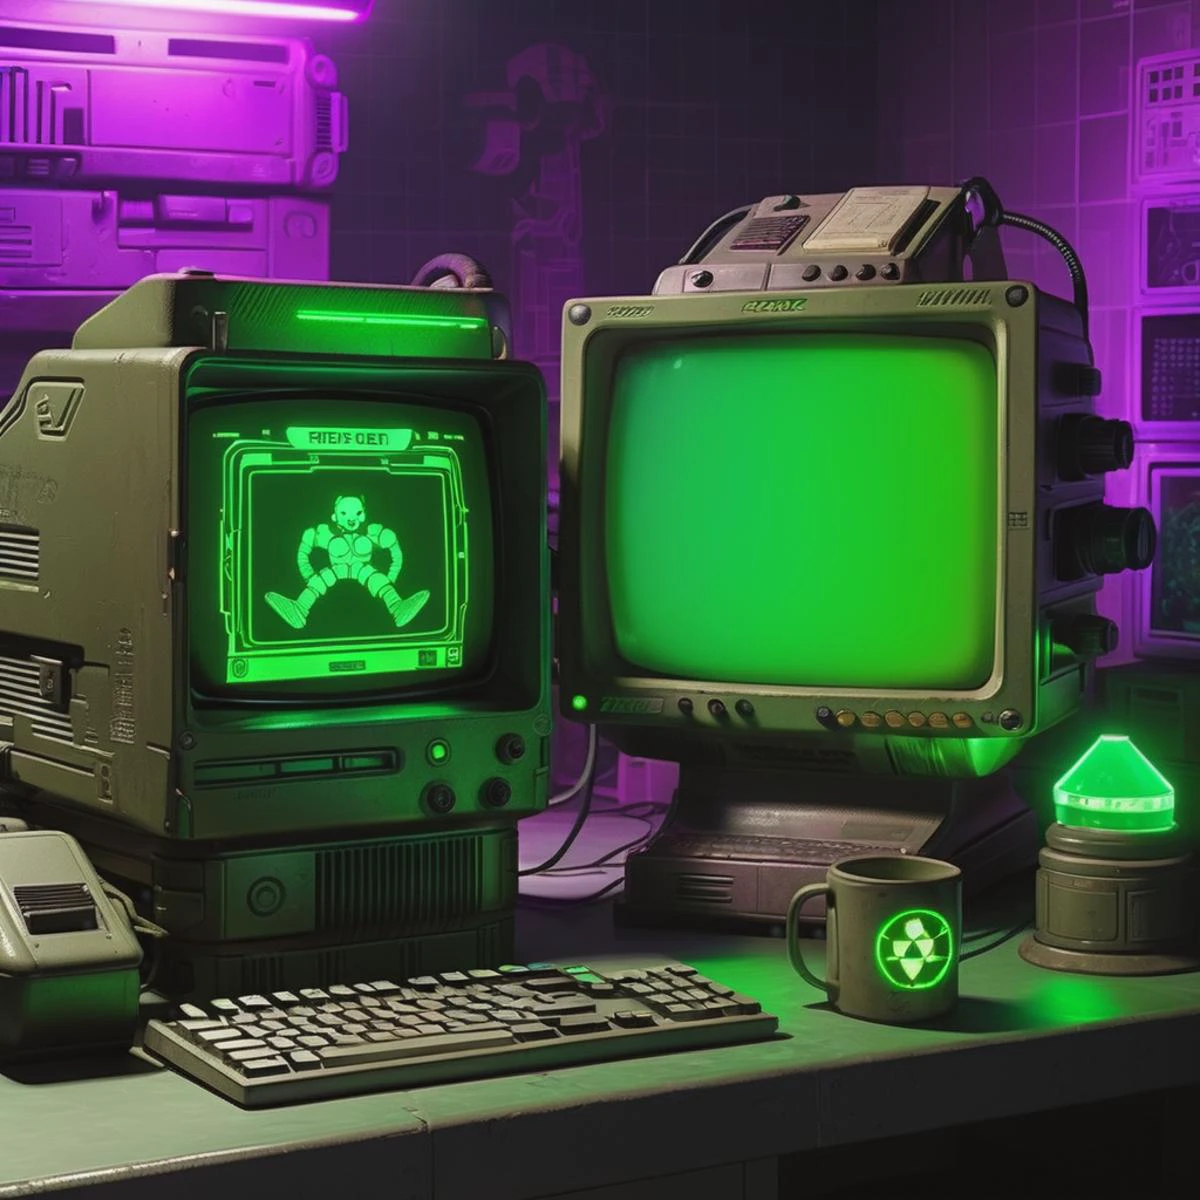 旧电脑,1 个大显示器, 2 个小型显示屏, 产品照片, 哔哔小子, 掉出来, ( 复古网络科技 ), 反光的, 光圈 f8, 3D 渲染, 新客观性,  赛博朋克风格, 绿色光芒, 紫色光芒, 暗室, 